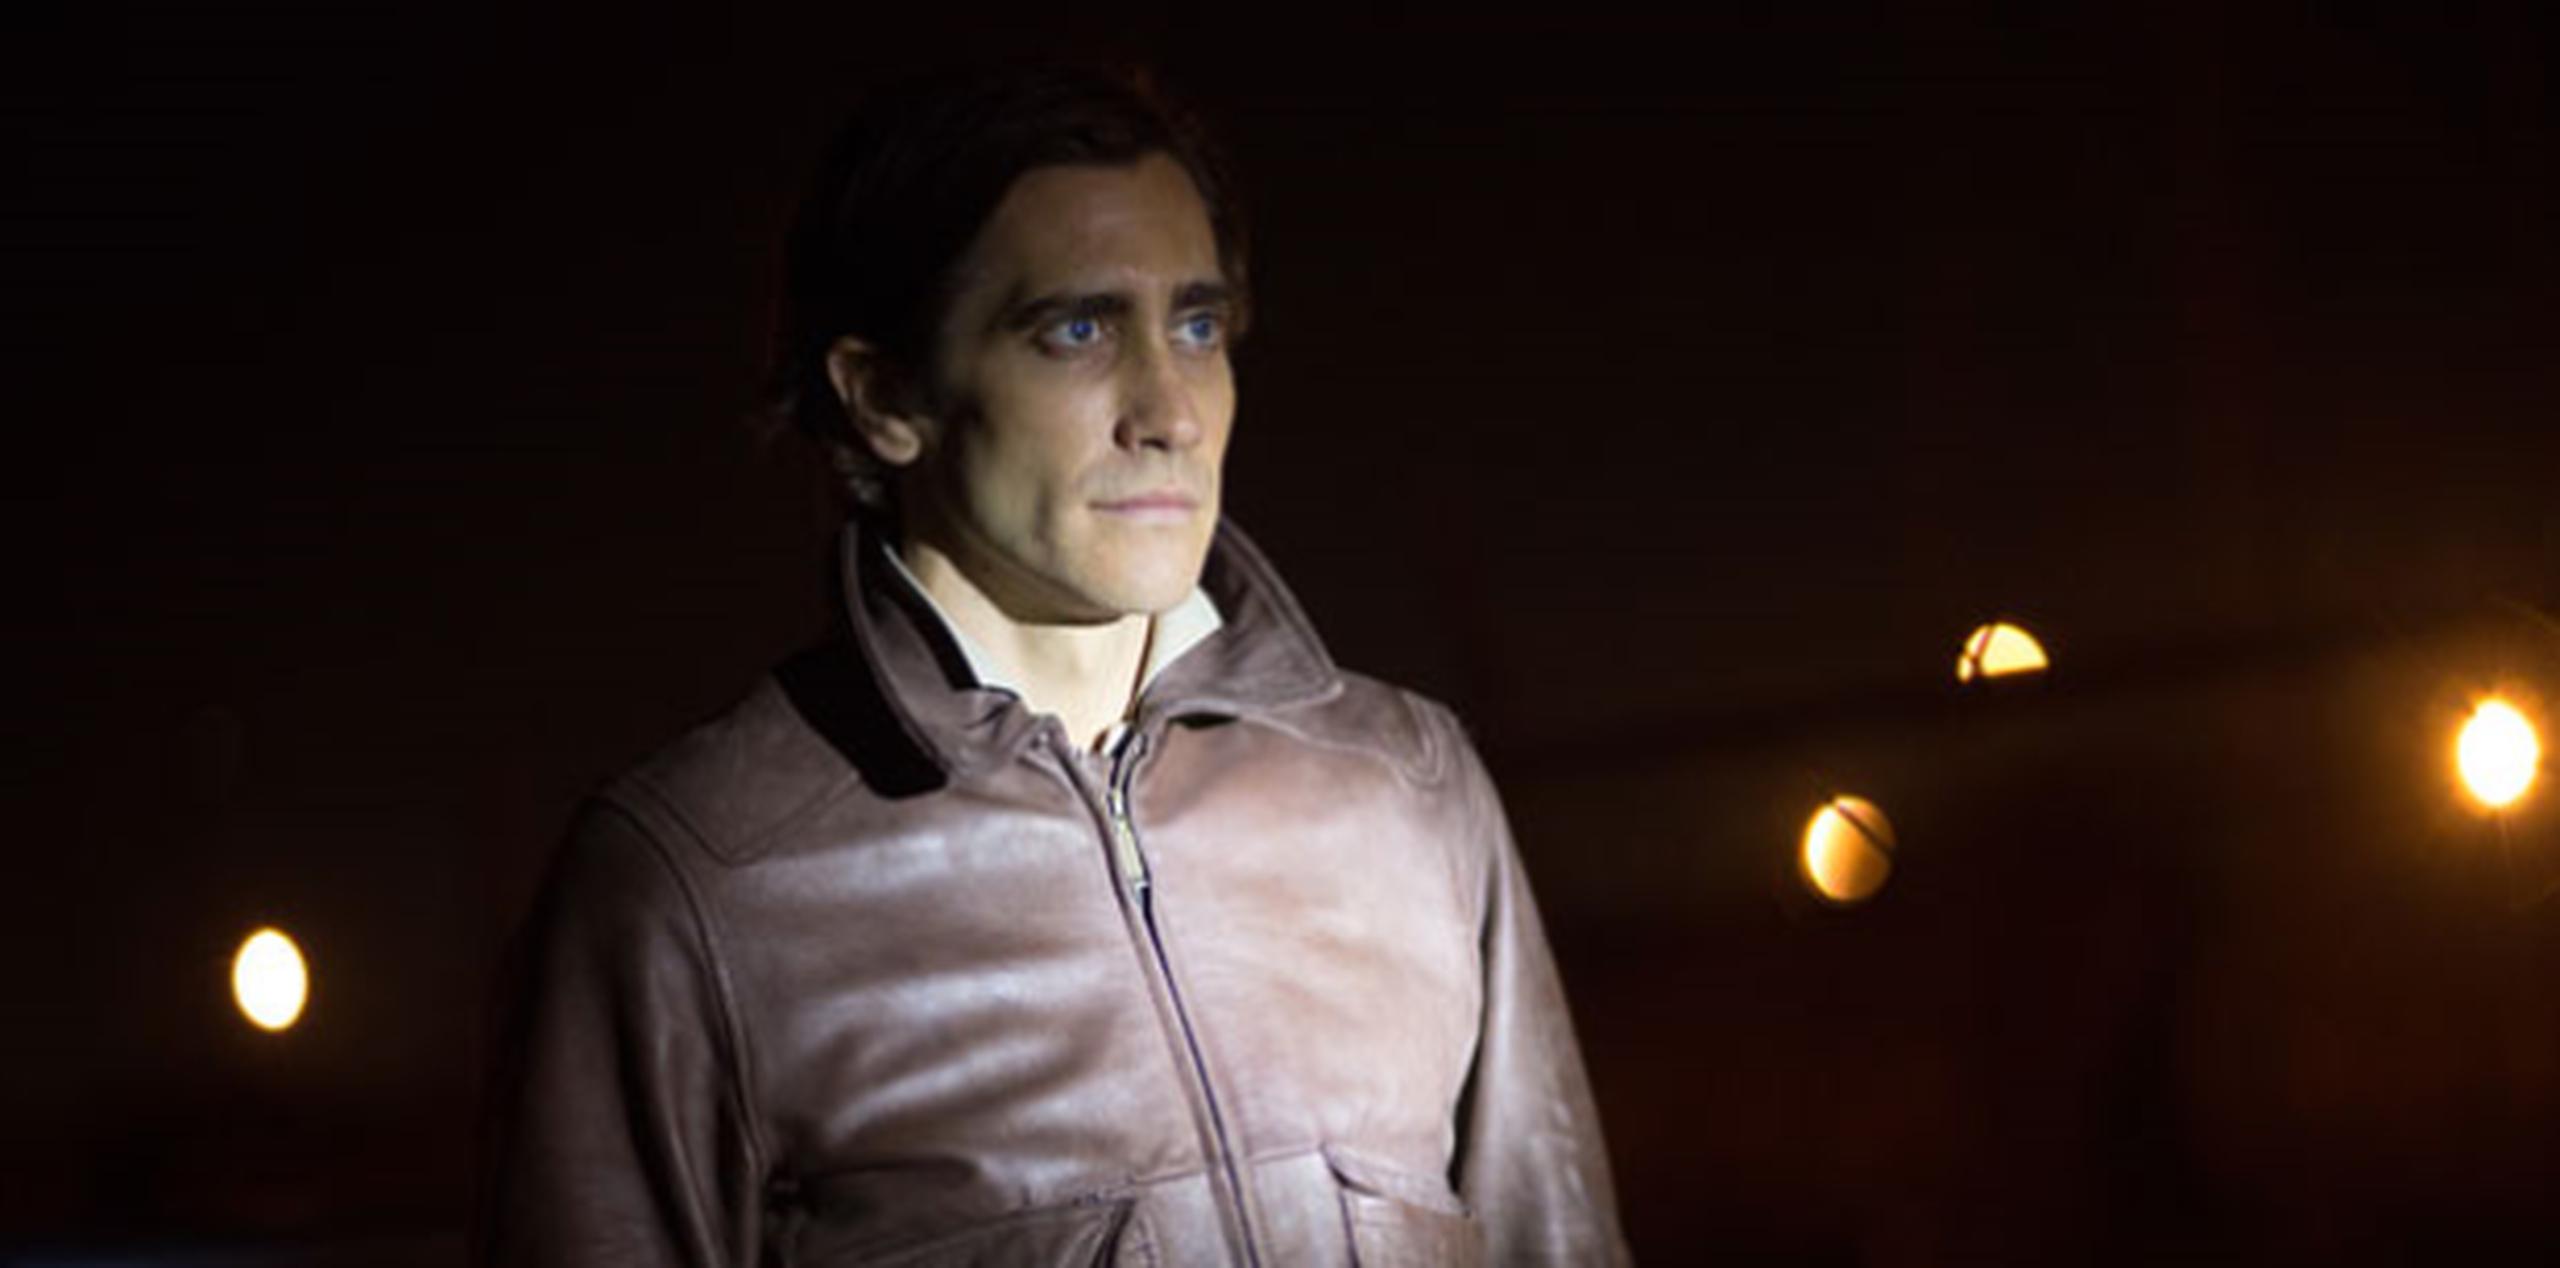 Jake Gyllenhaal interpreta a un hombre que persigue ambulancias en busca de imágenes sangrientas para los noticiarios locales. (AP)